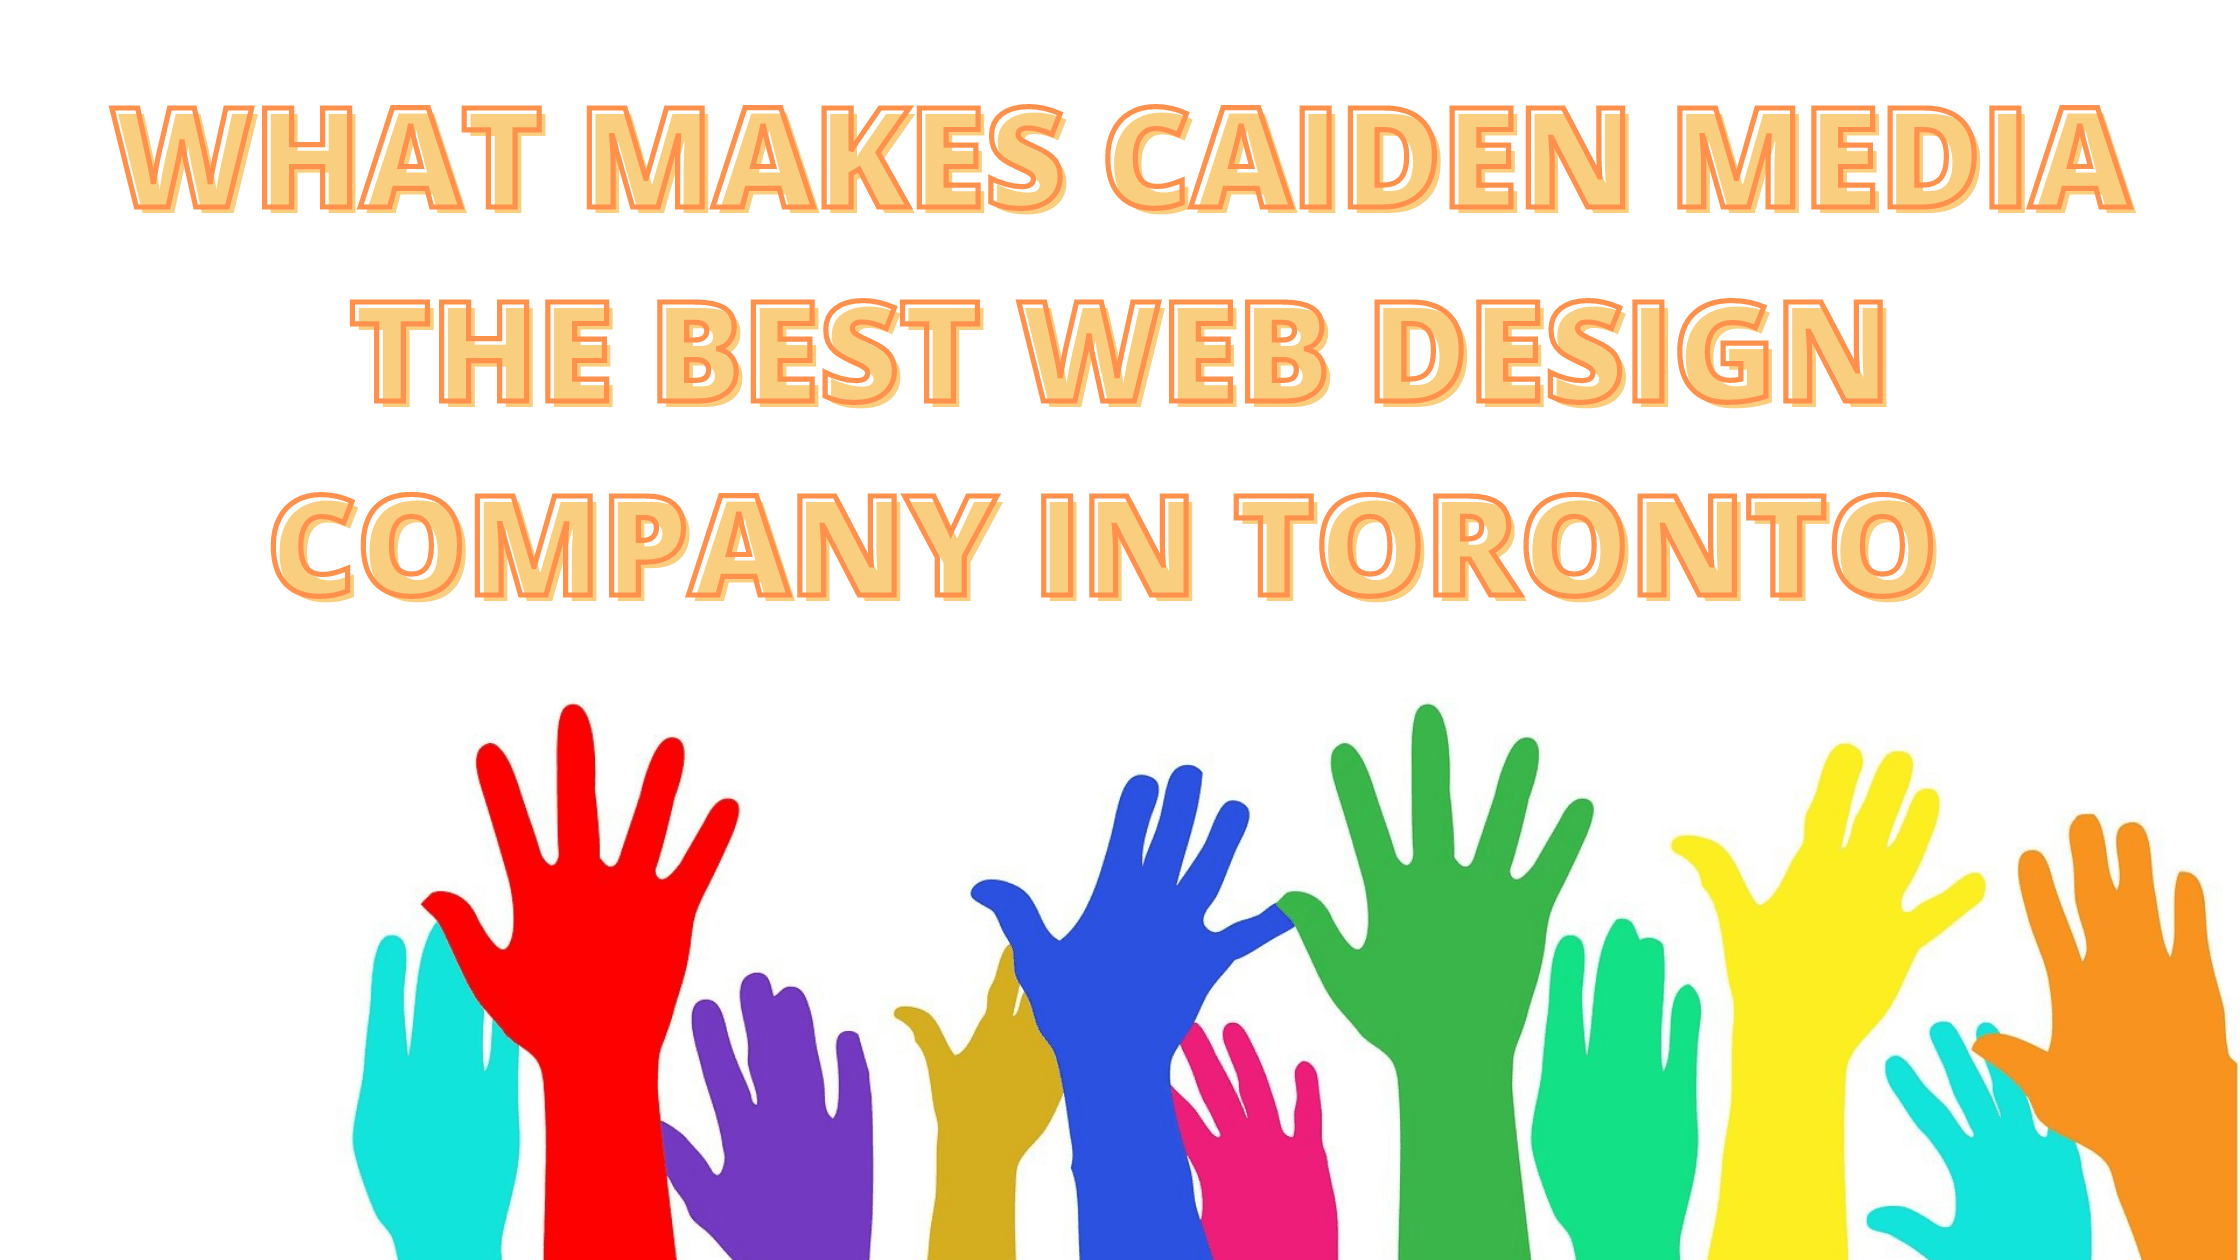 Web Design Company In Toronto